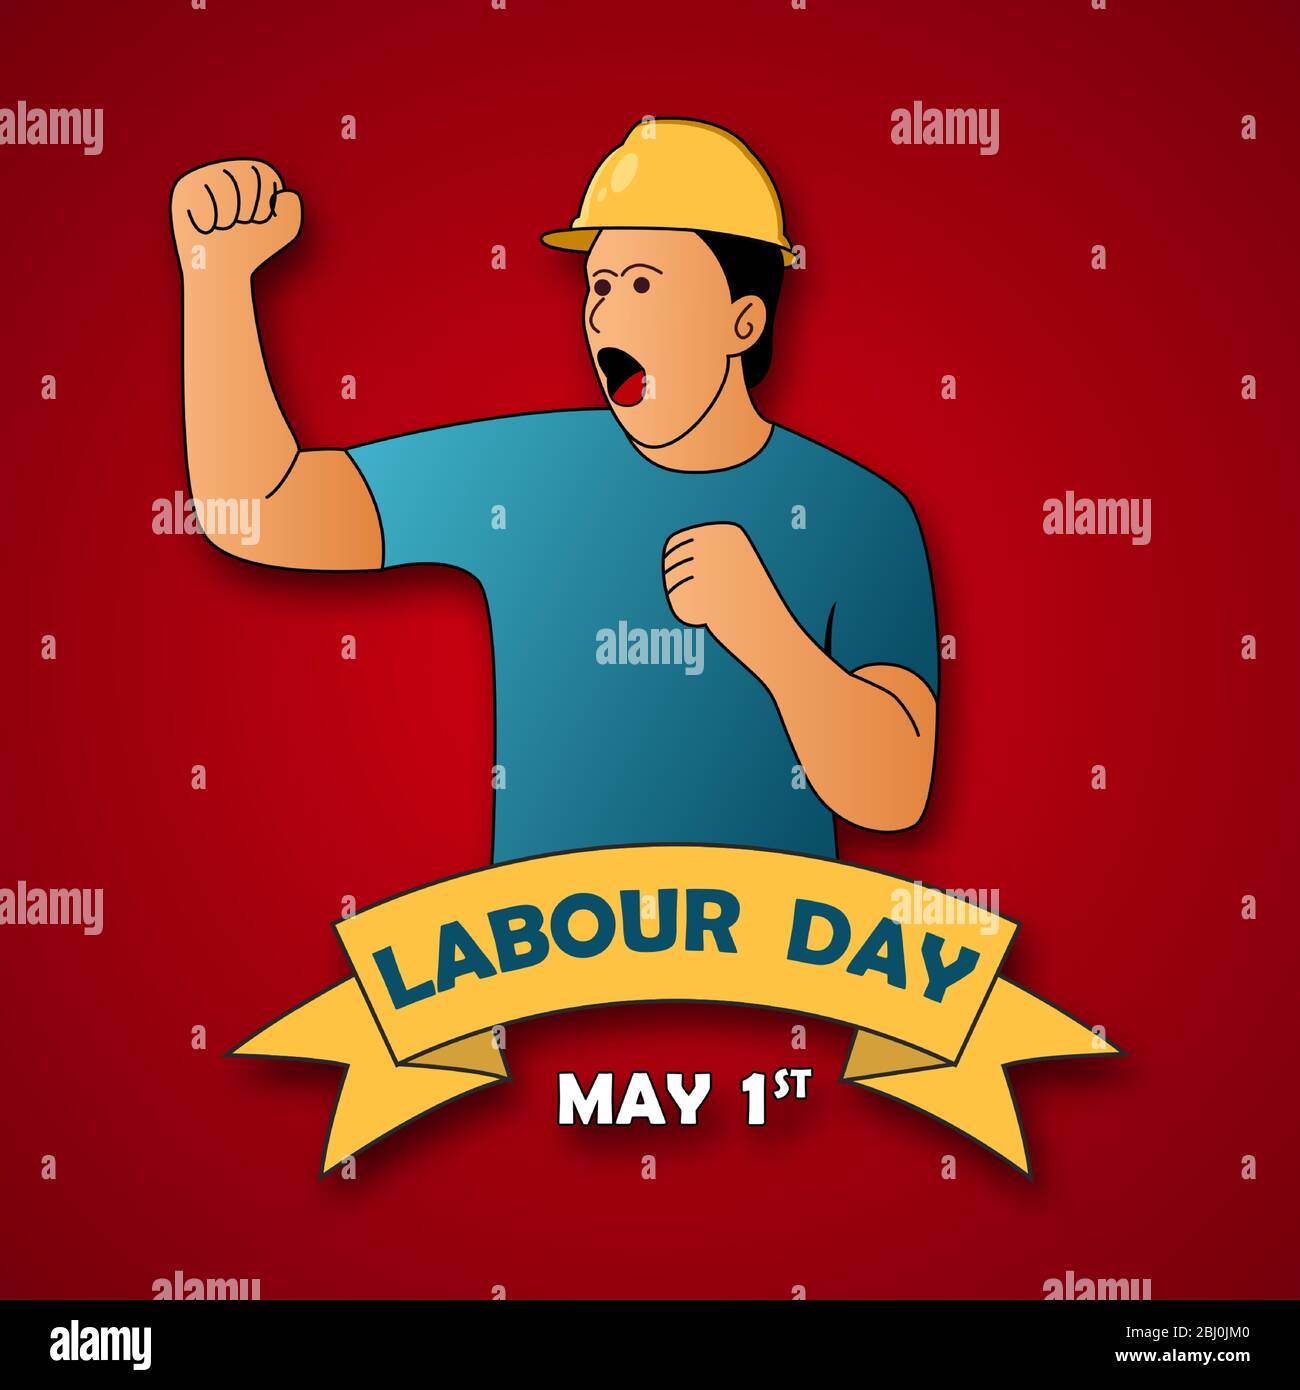 Happy Labor Day Poster oder Banner-Design. 1. Mai Internationaler Tag Der Arbeit. Mit einer Abbildung von jemandem, der einen Arbeitshelm trägt. Stock Vektor